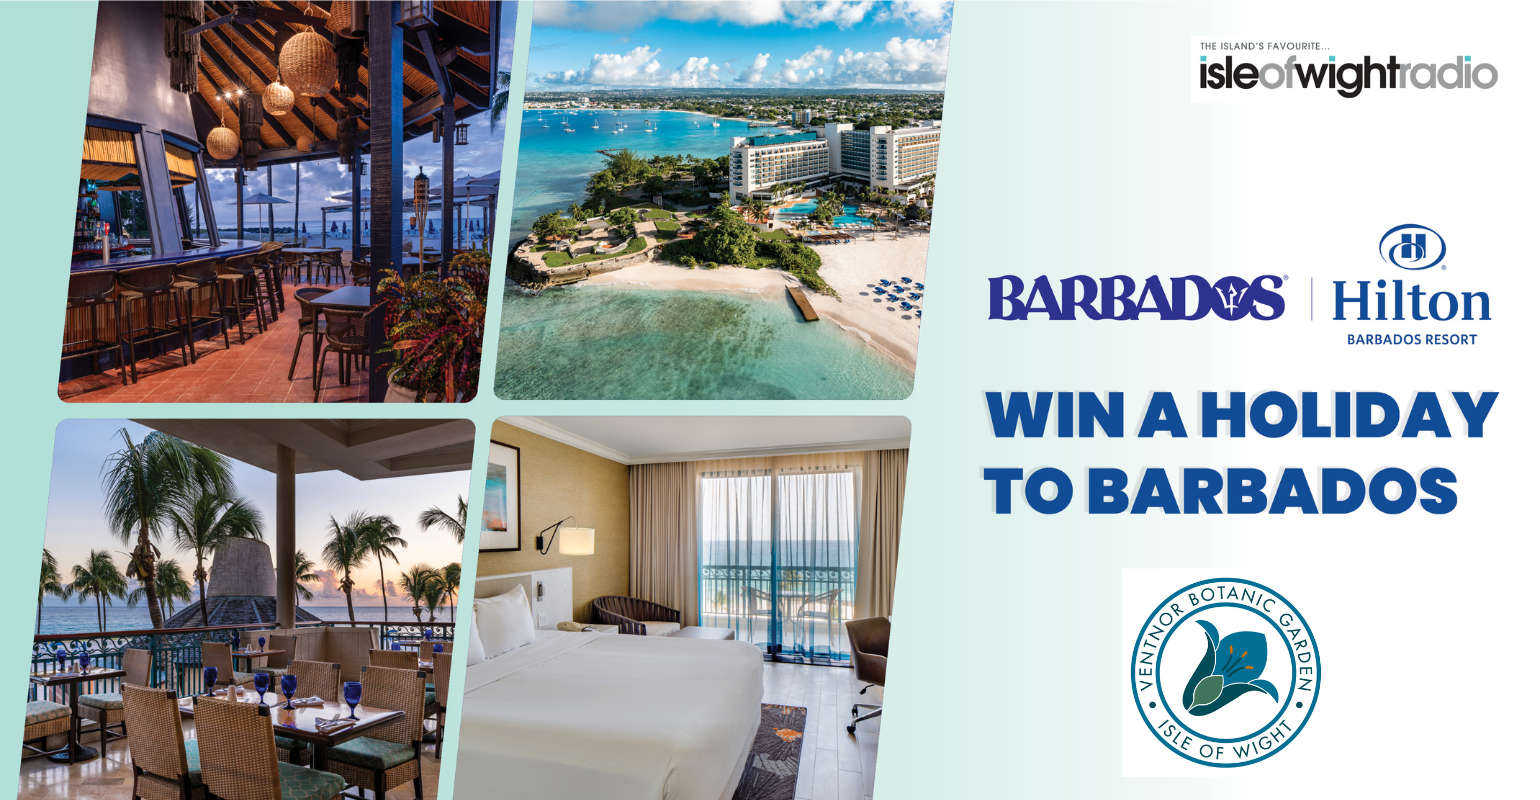 Take Me To Barbados